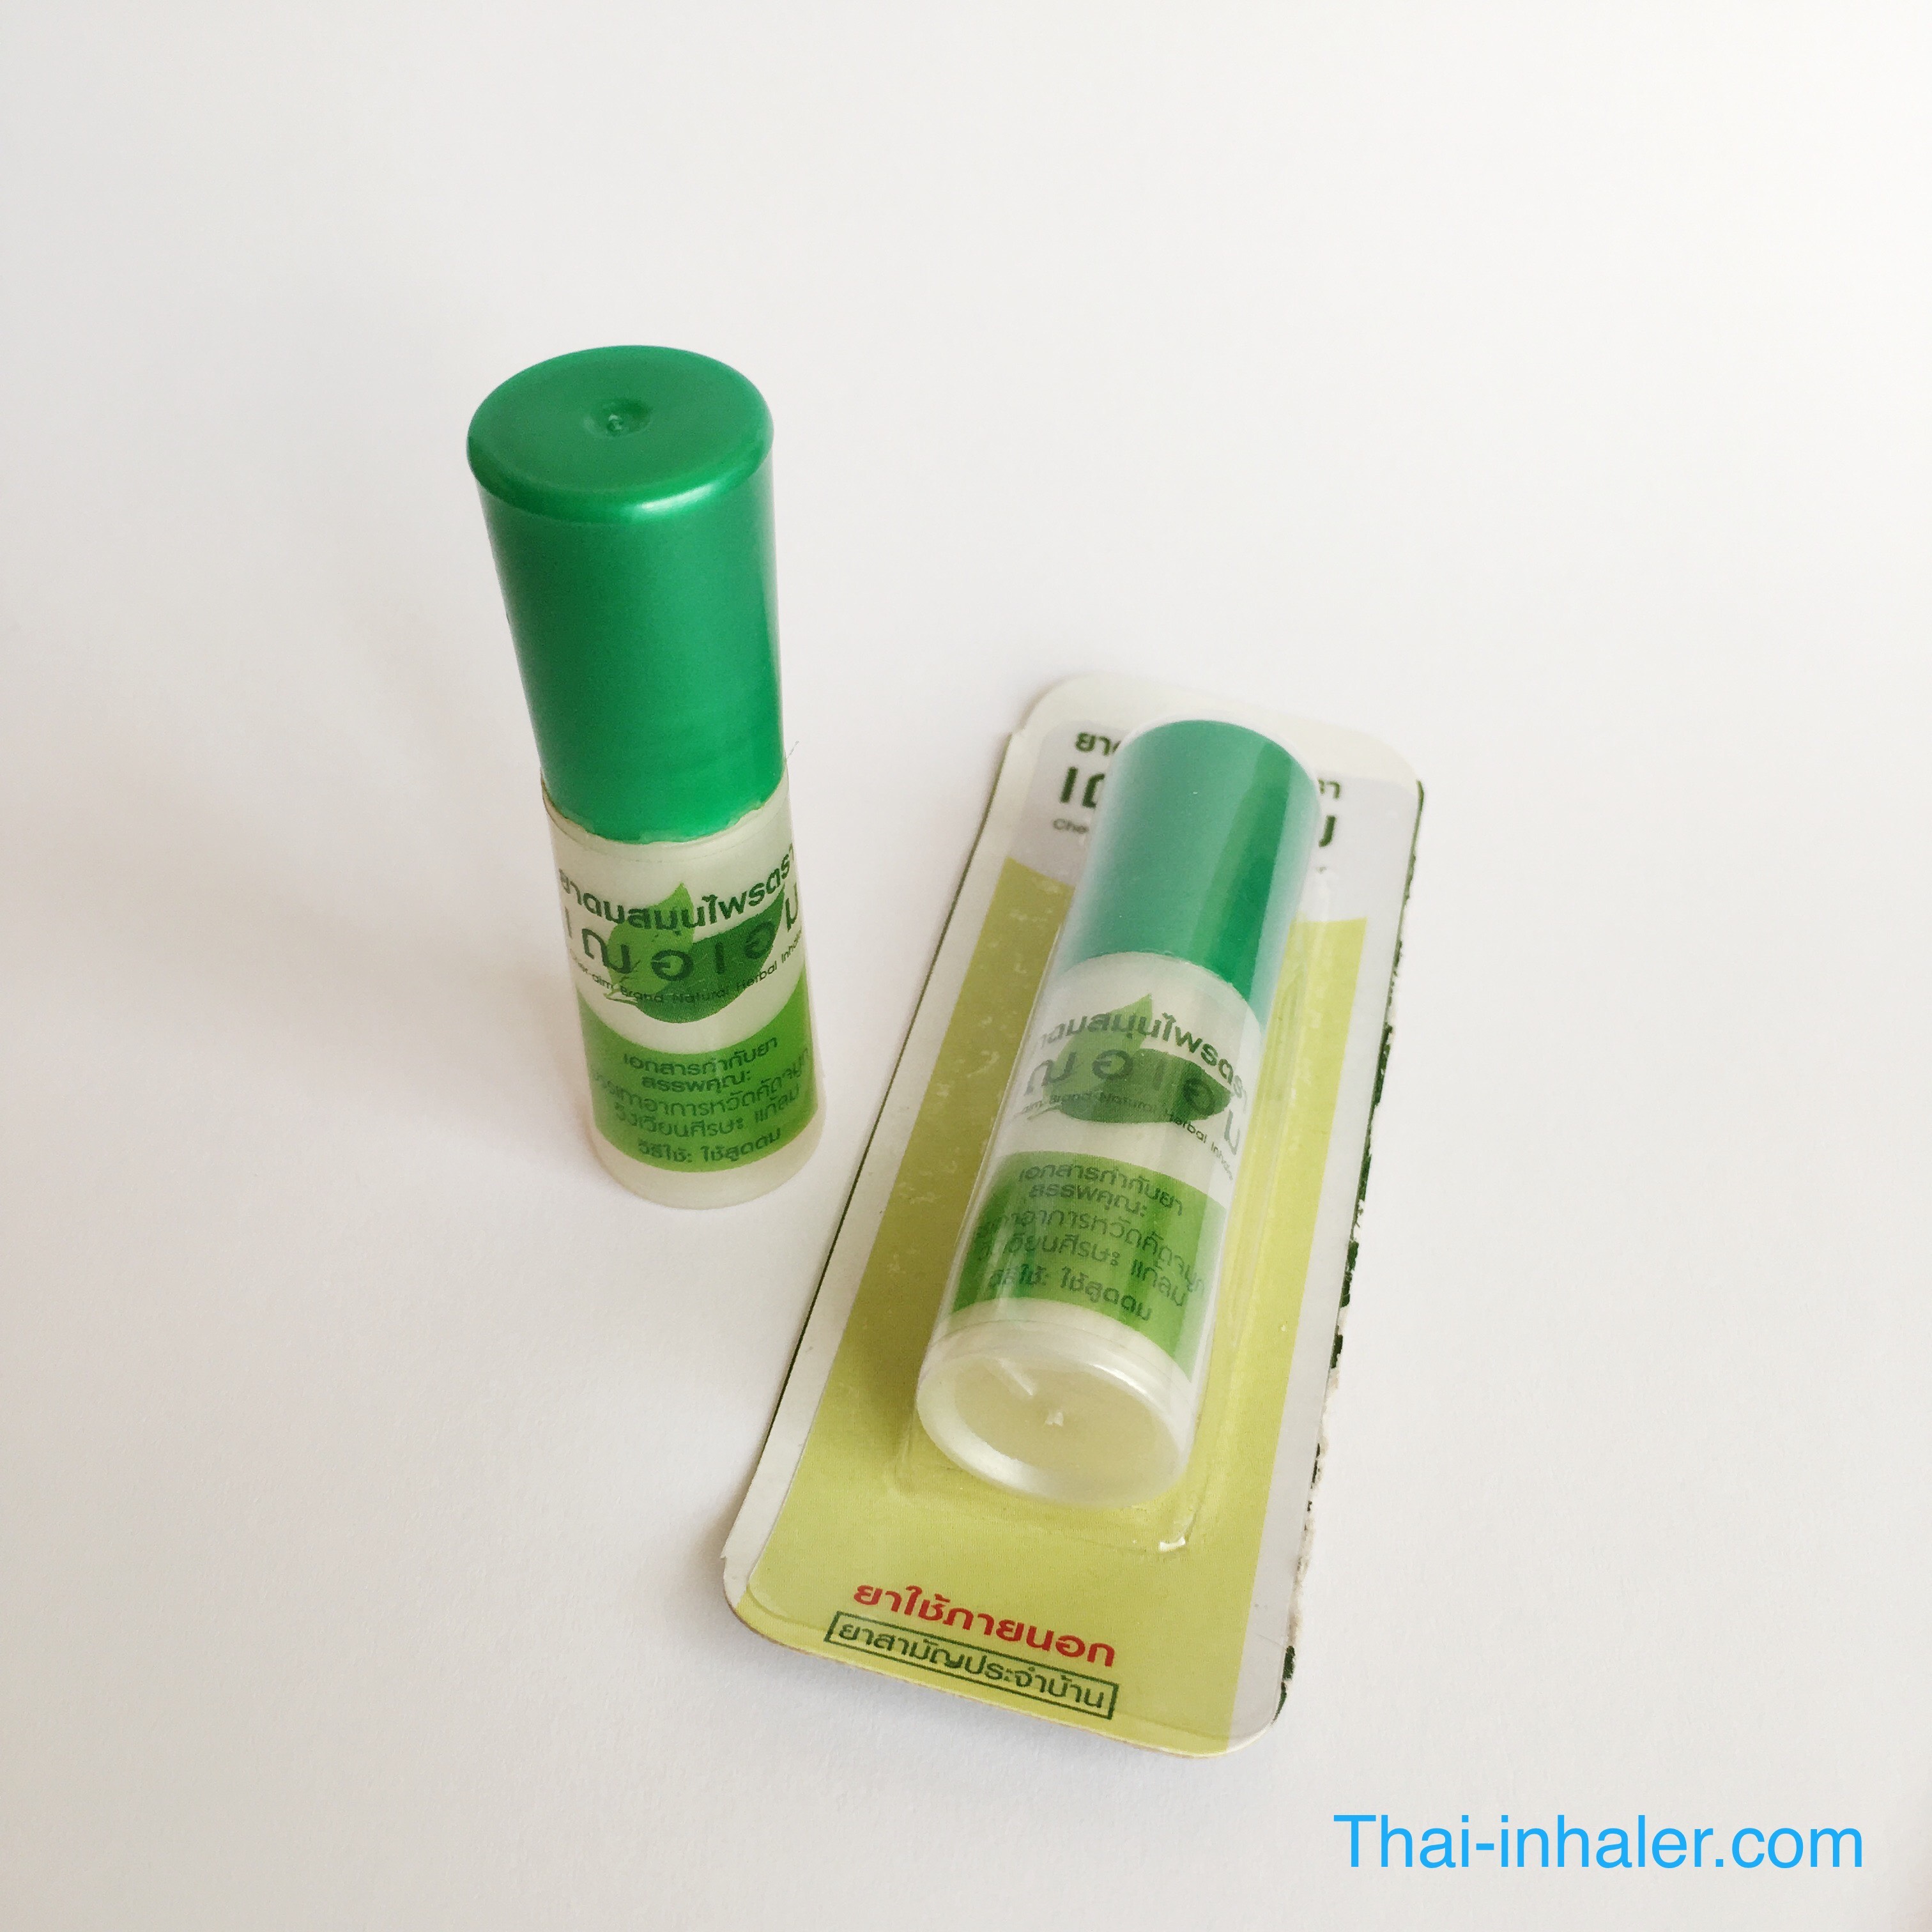 Cher-Aim - Thailand Herbal Nasal Inhaler - 1 Piece 